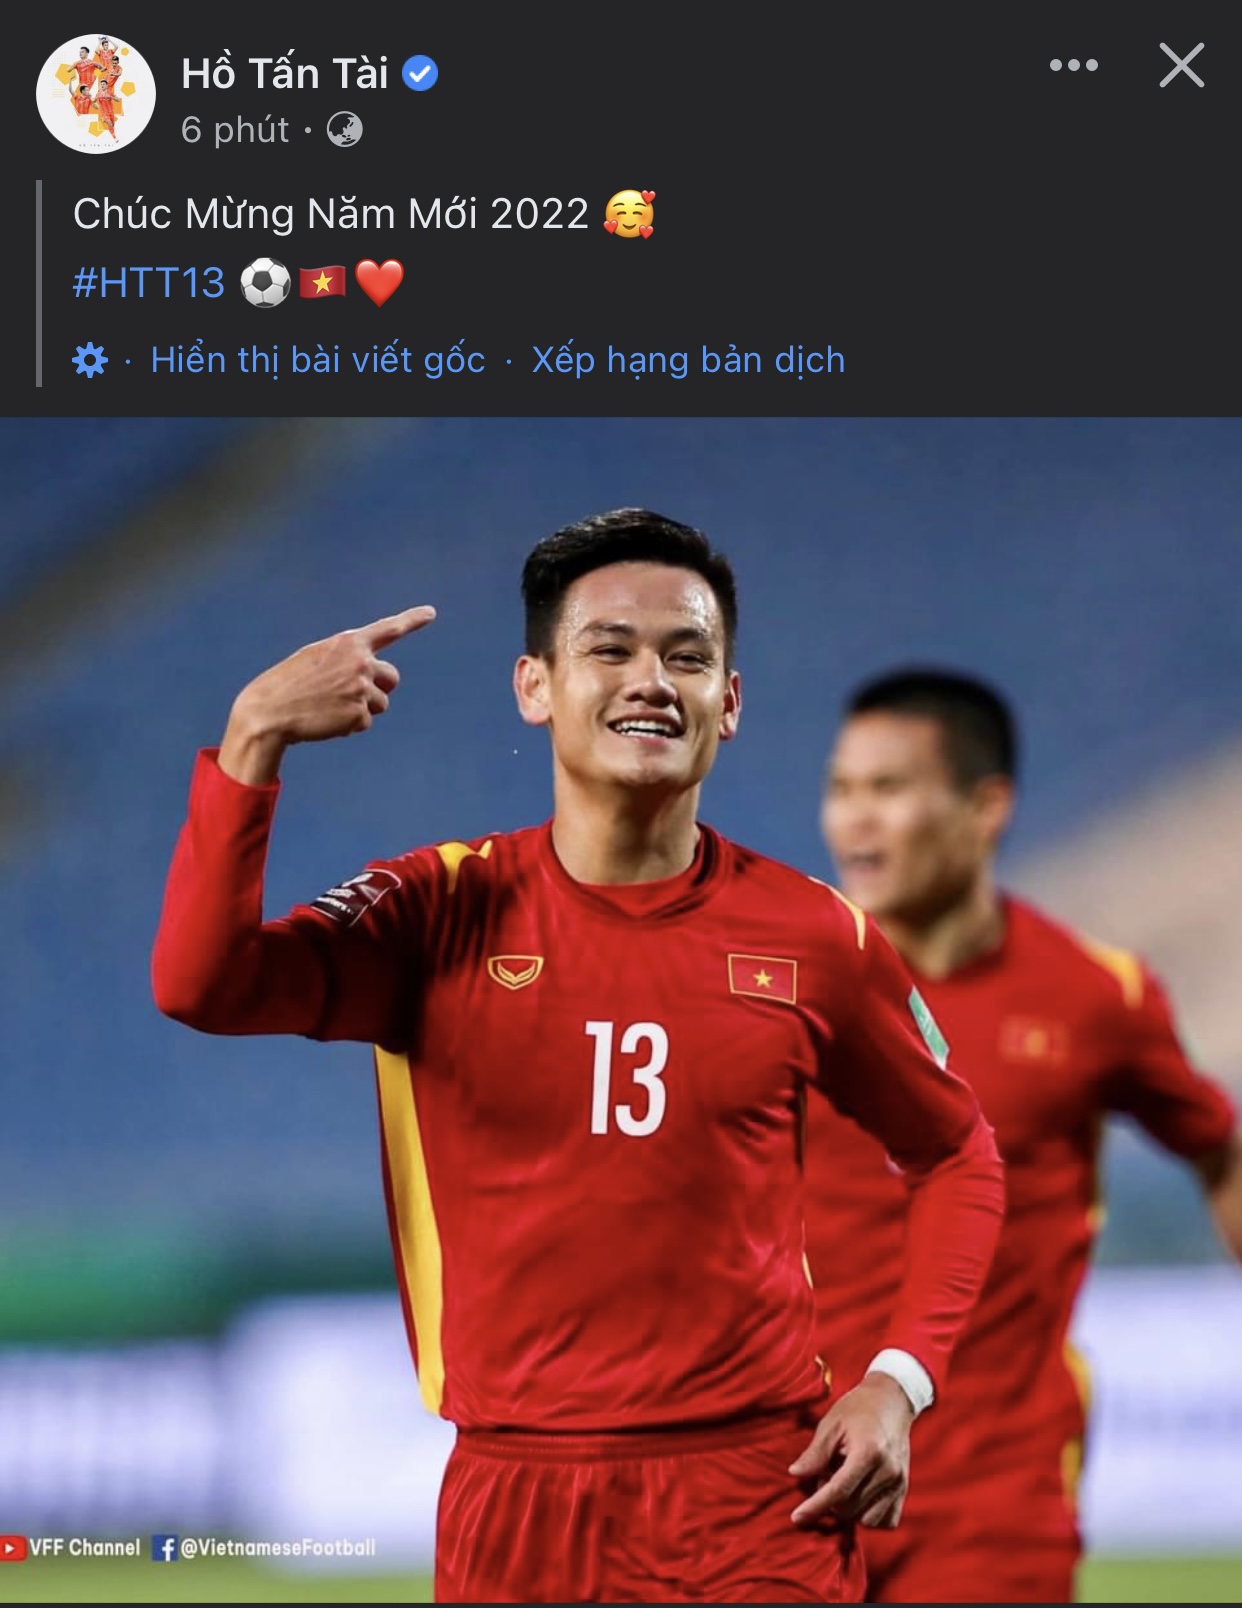 Các cầu thủ ĐT Việt Nam ăn mừng sau khi dành chiến thắng trước Trung Quốc - Ảnh 4.